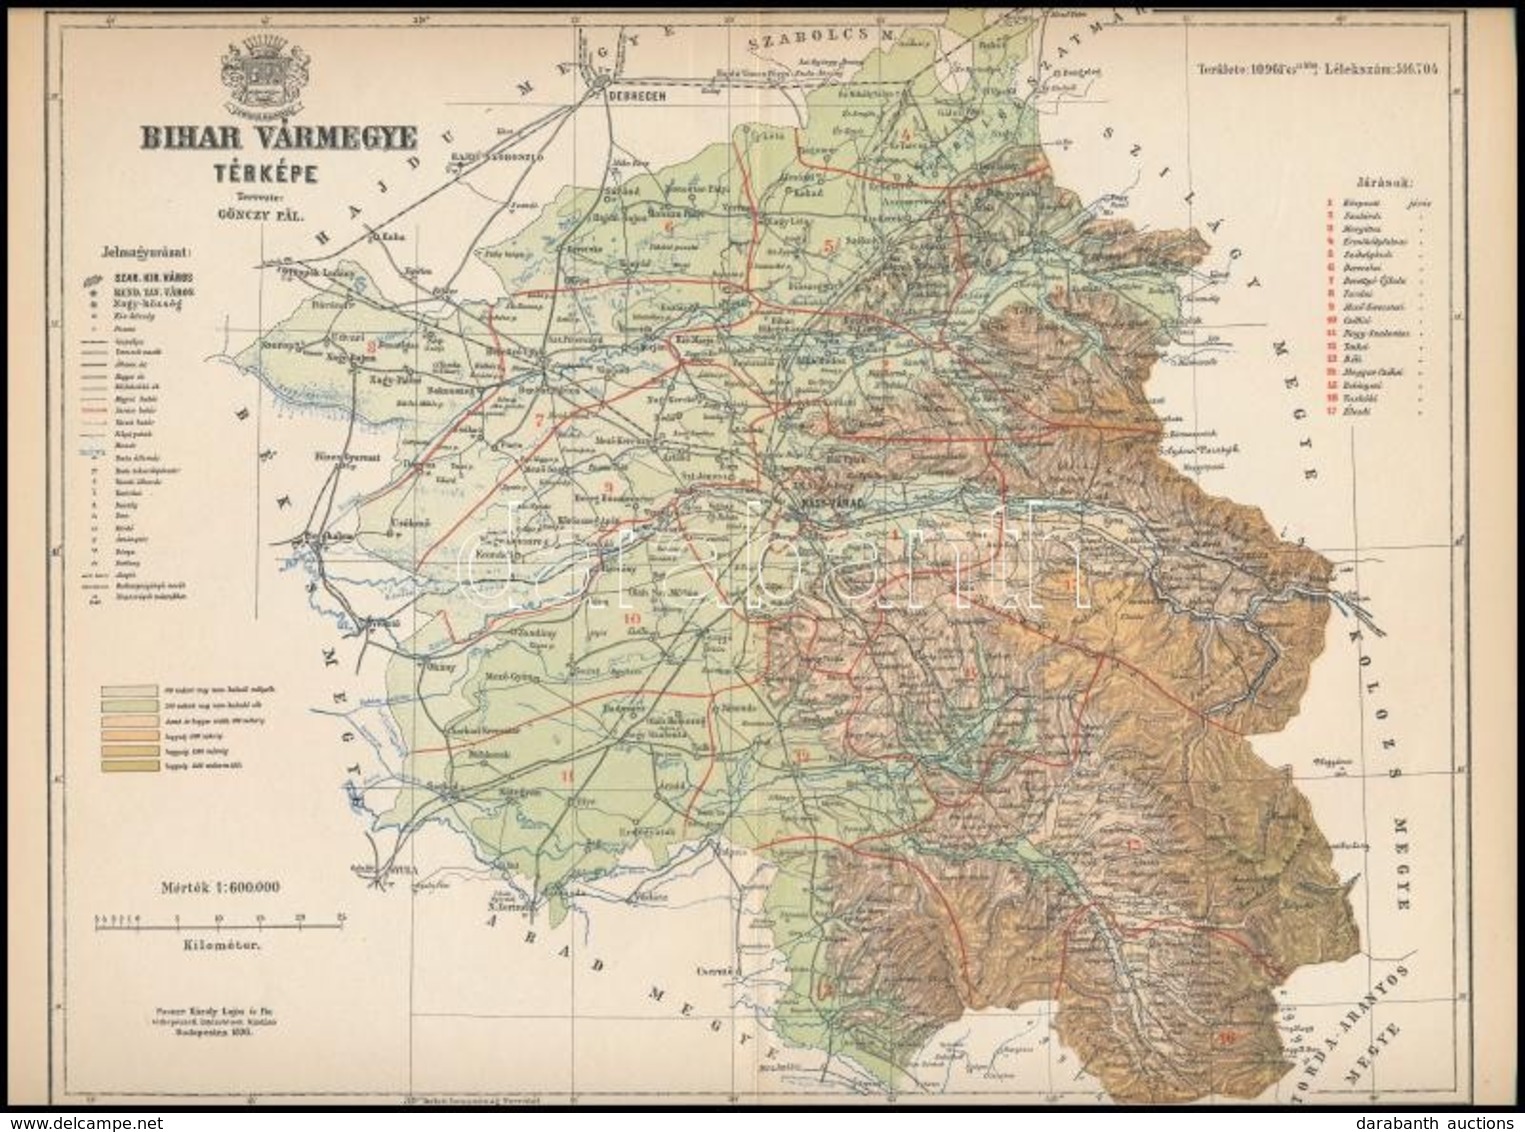 1895 Bihar Vármegye Térképe, Tervezete: Gönczy Pál, Készült: Posner Károly Lajos és Fia Térképészeti Műintézetében, Hajt - Other & Unclassified